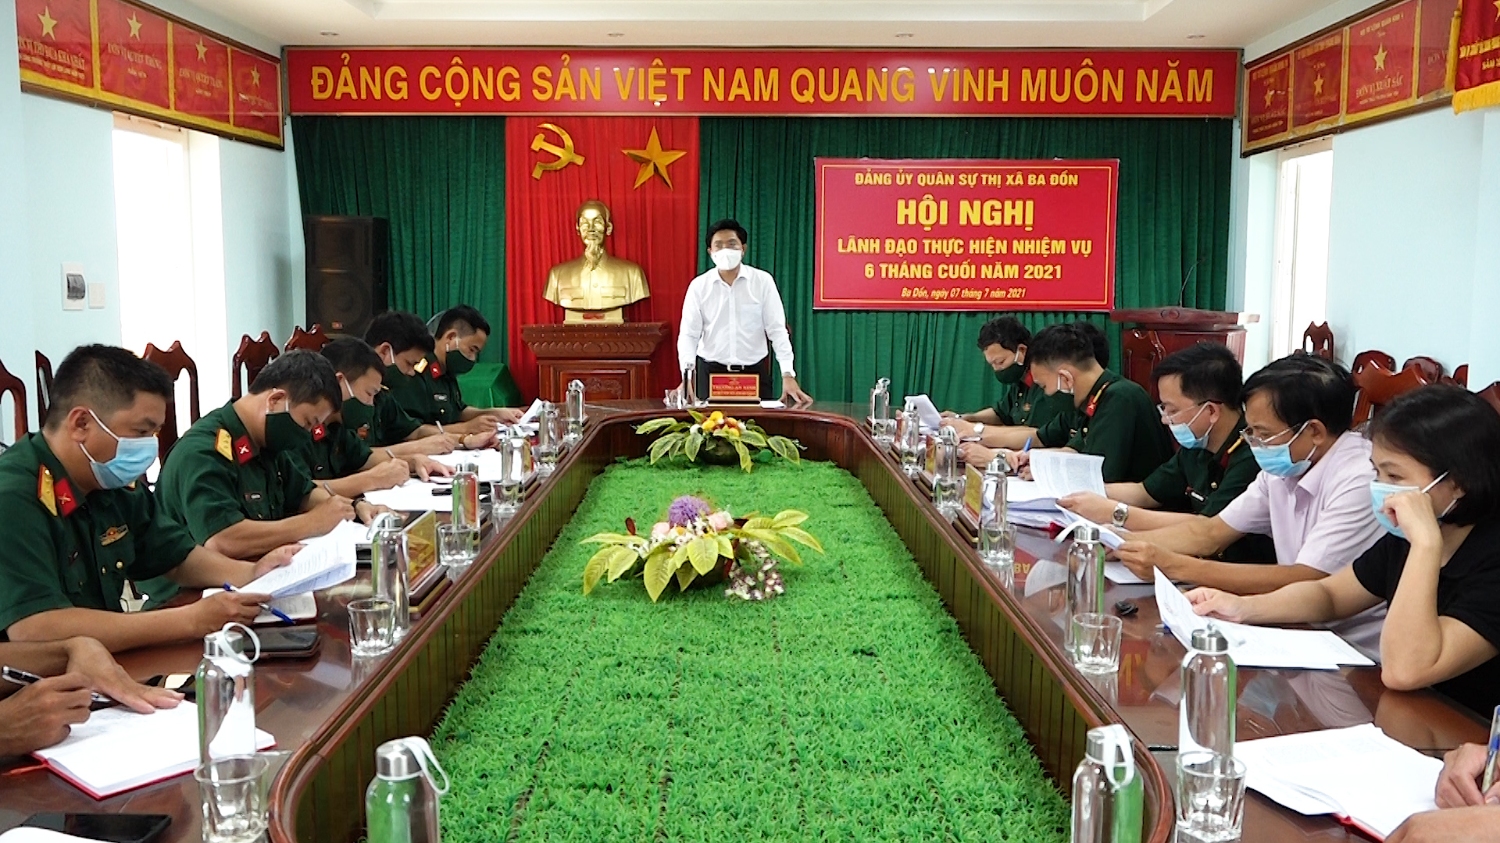 Hội nghị lãnh đạo thực hiện nhiệm vụ 6 tháng cuối năm 2021 của Đảng ủy Quân sự thị xã Ba Đồn.